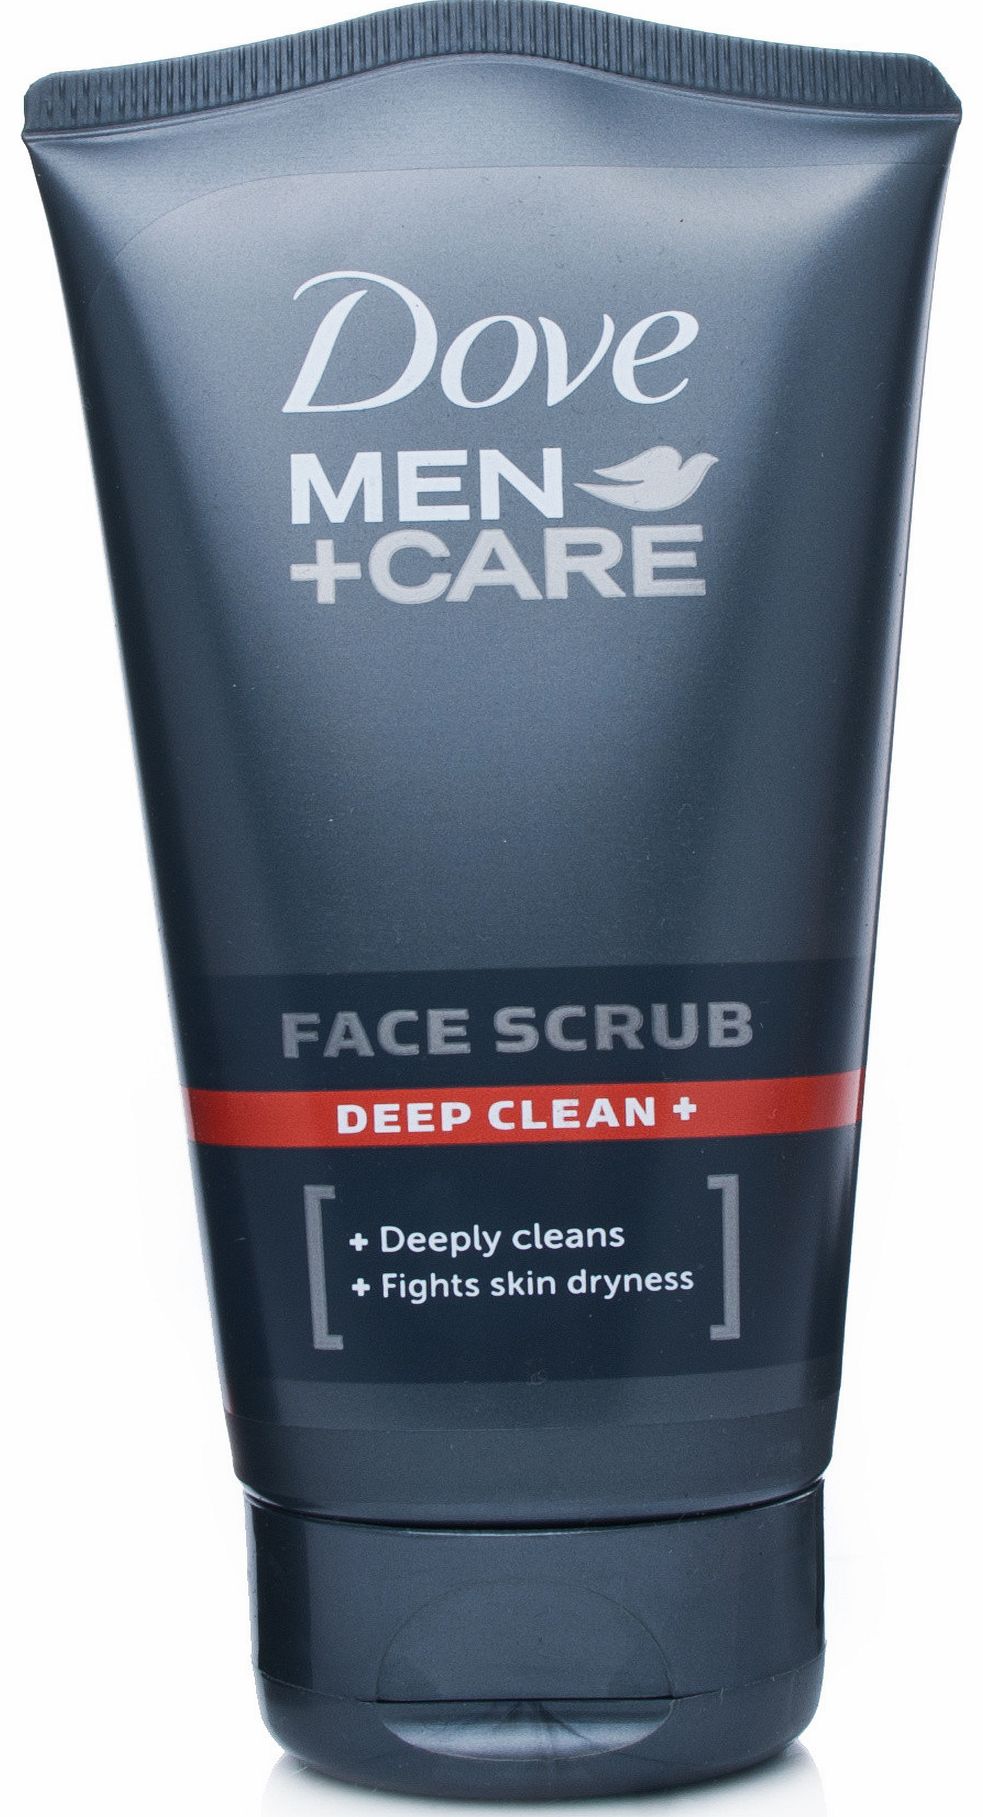 Men+Care Face Scrub Deep Clean+